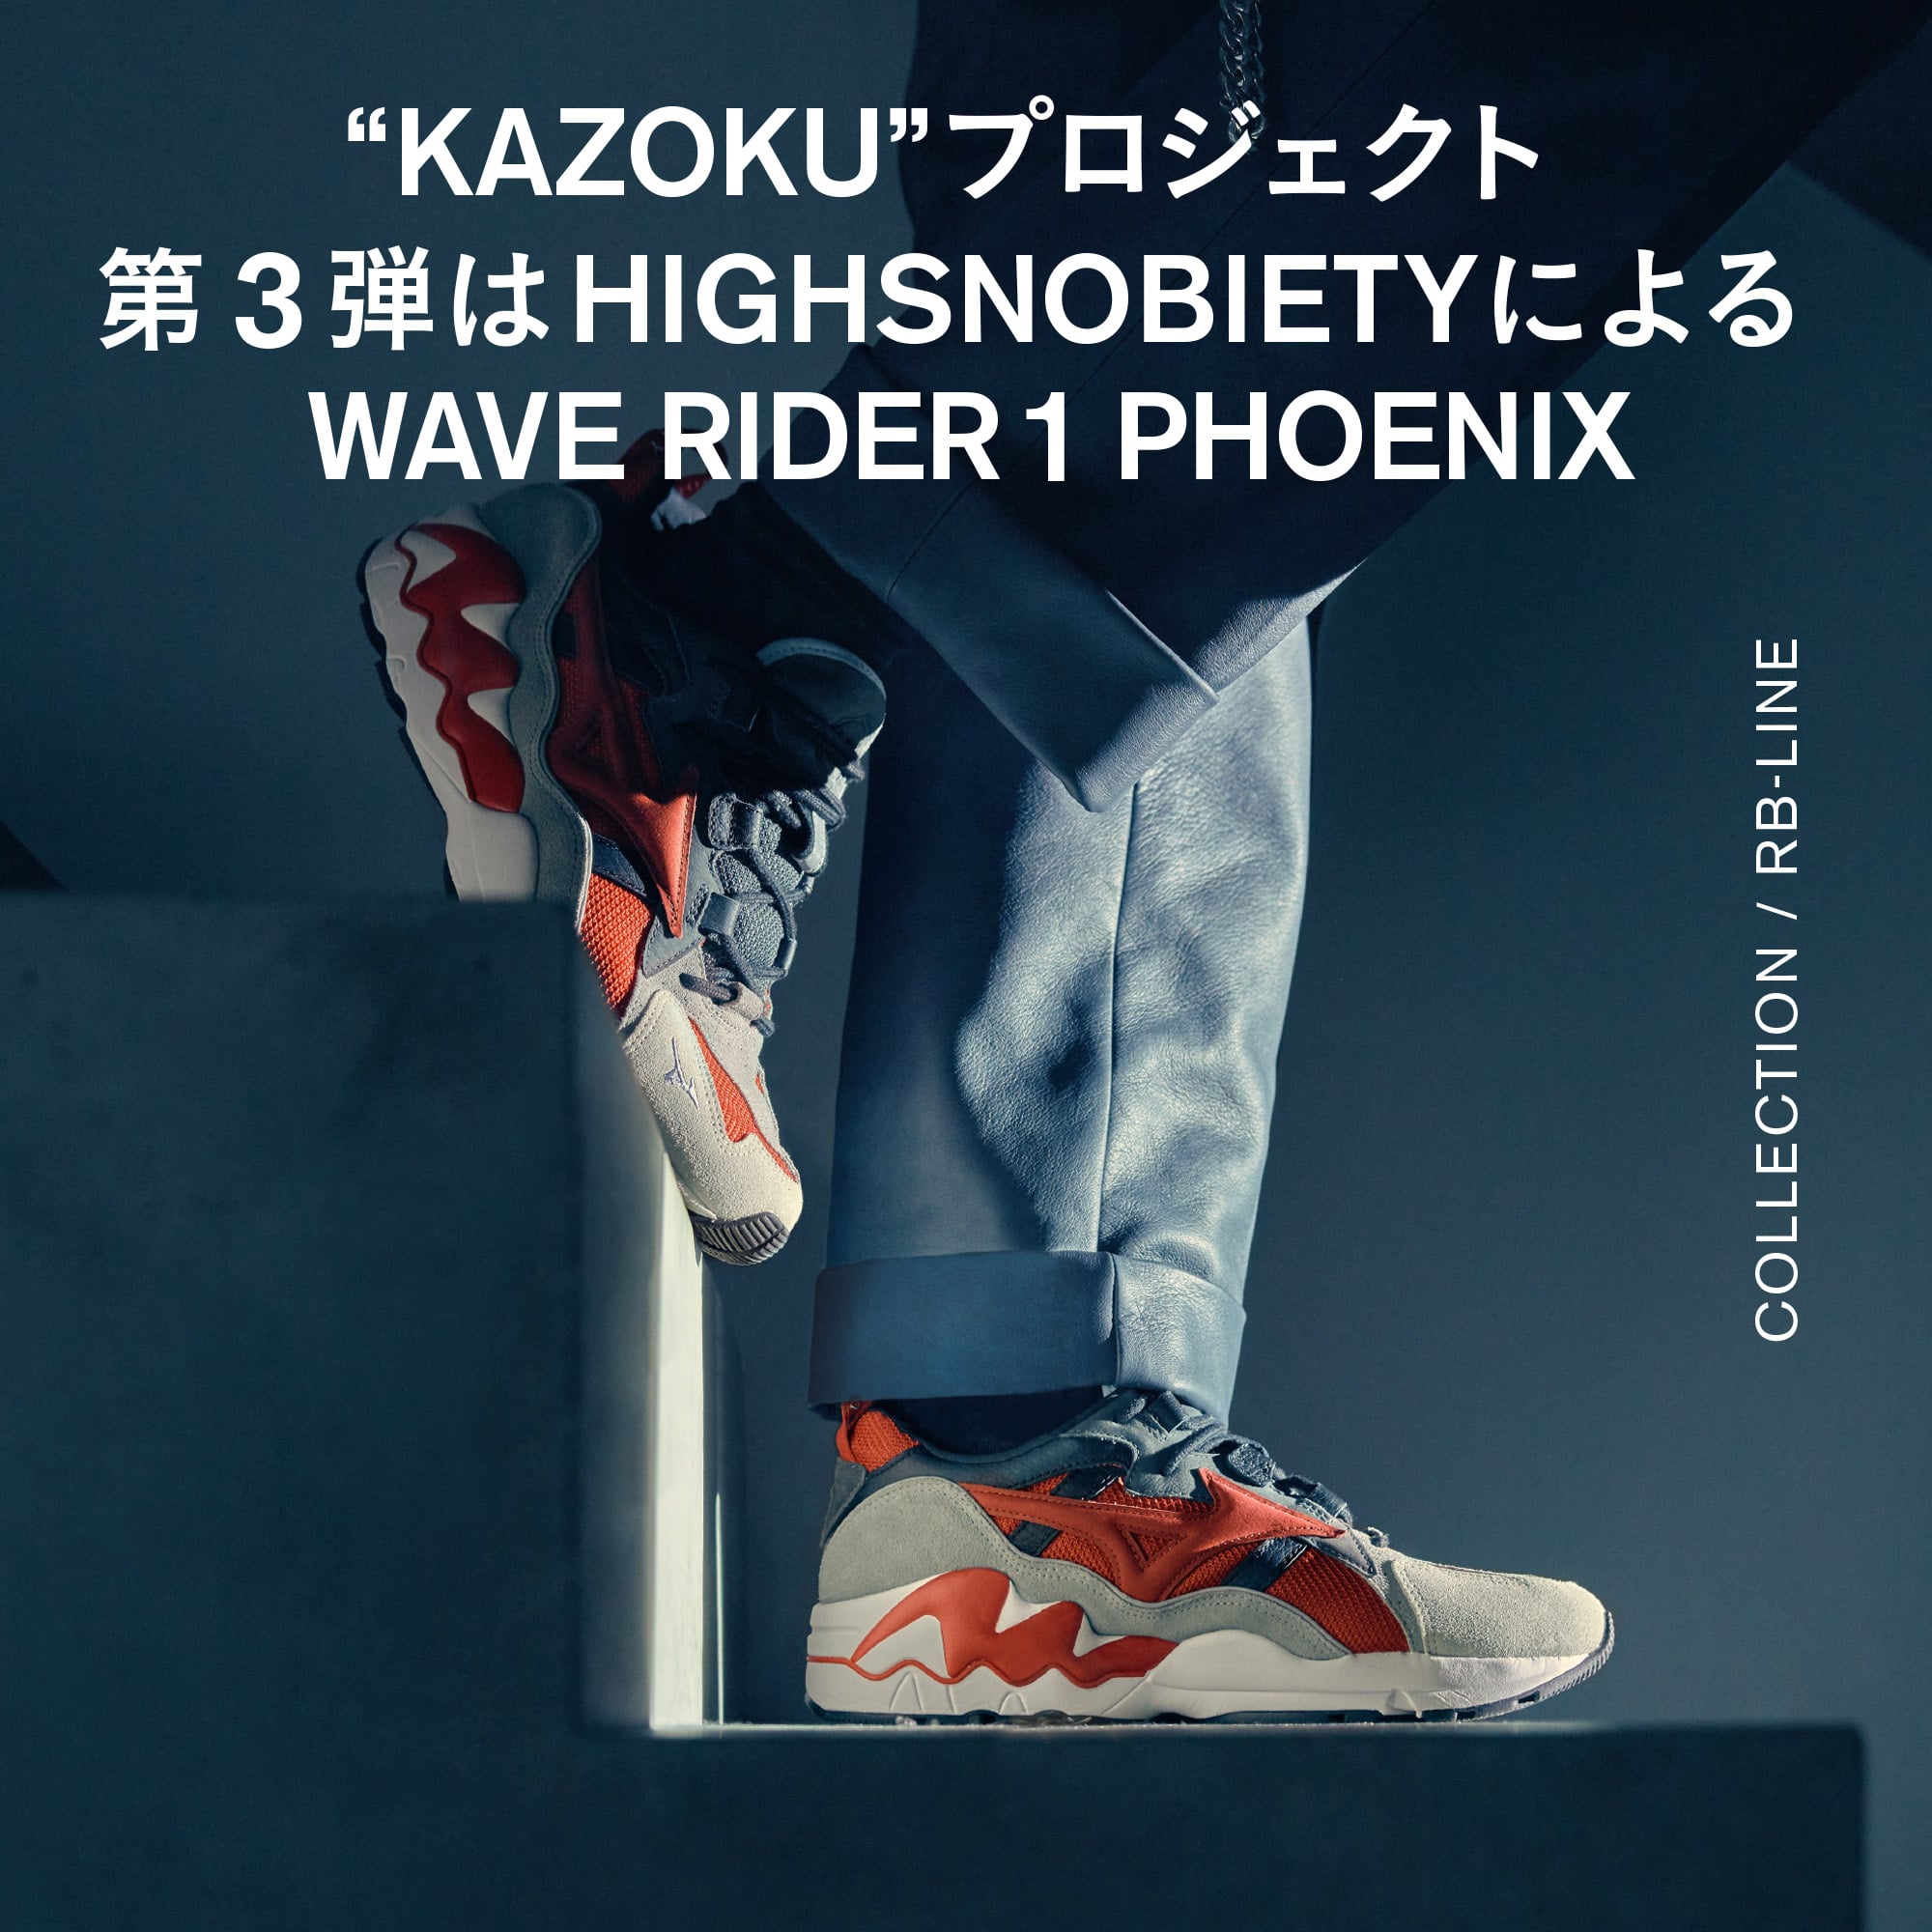 世界各国のキーアカウントを繋ぐ“KAZOKU”プロジェクト第3弾はHighsnobietyによるWAVE RIDER 1 PHOENIX